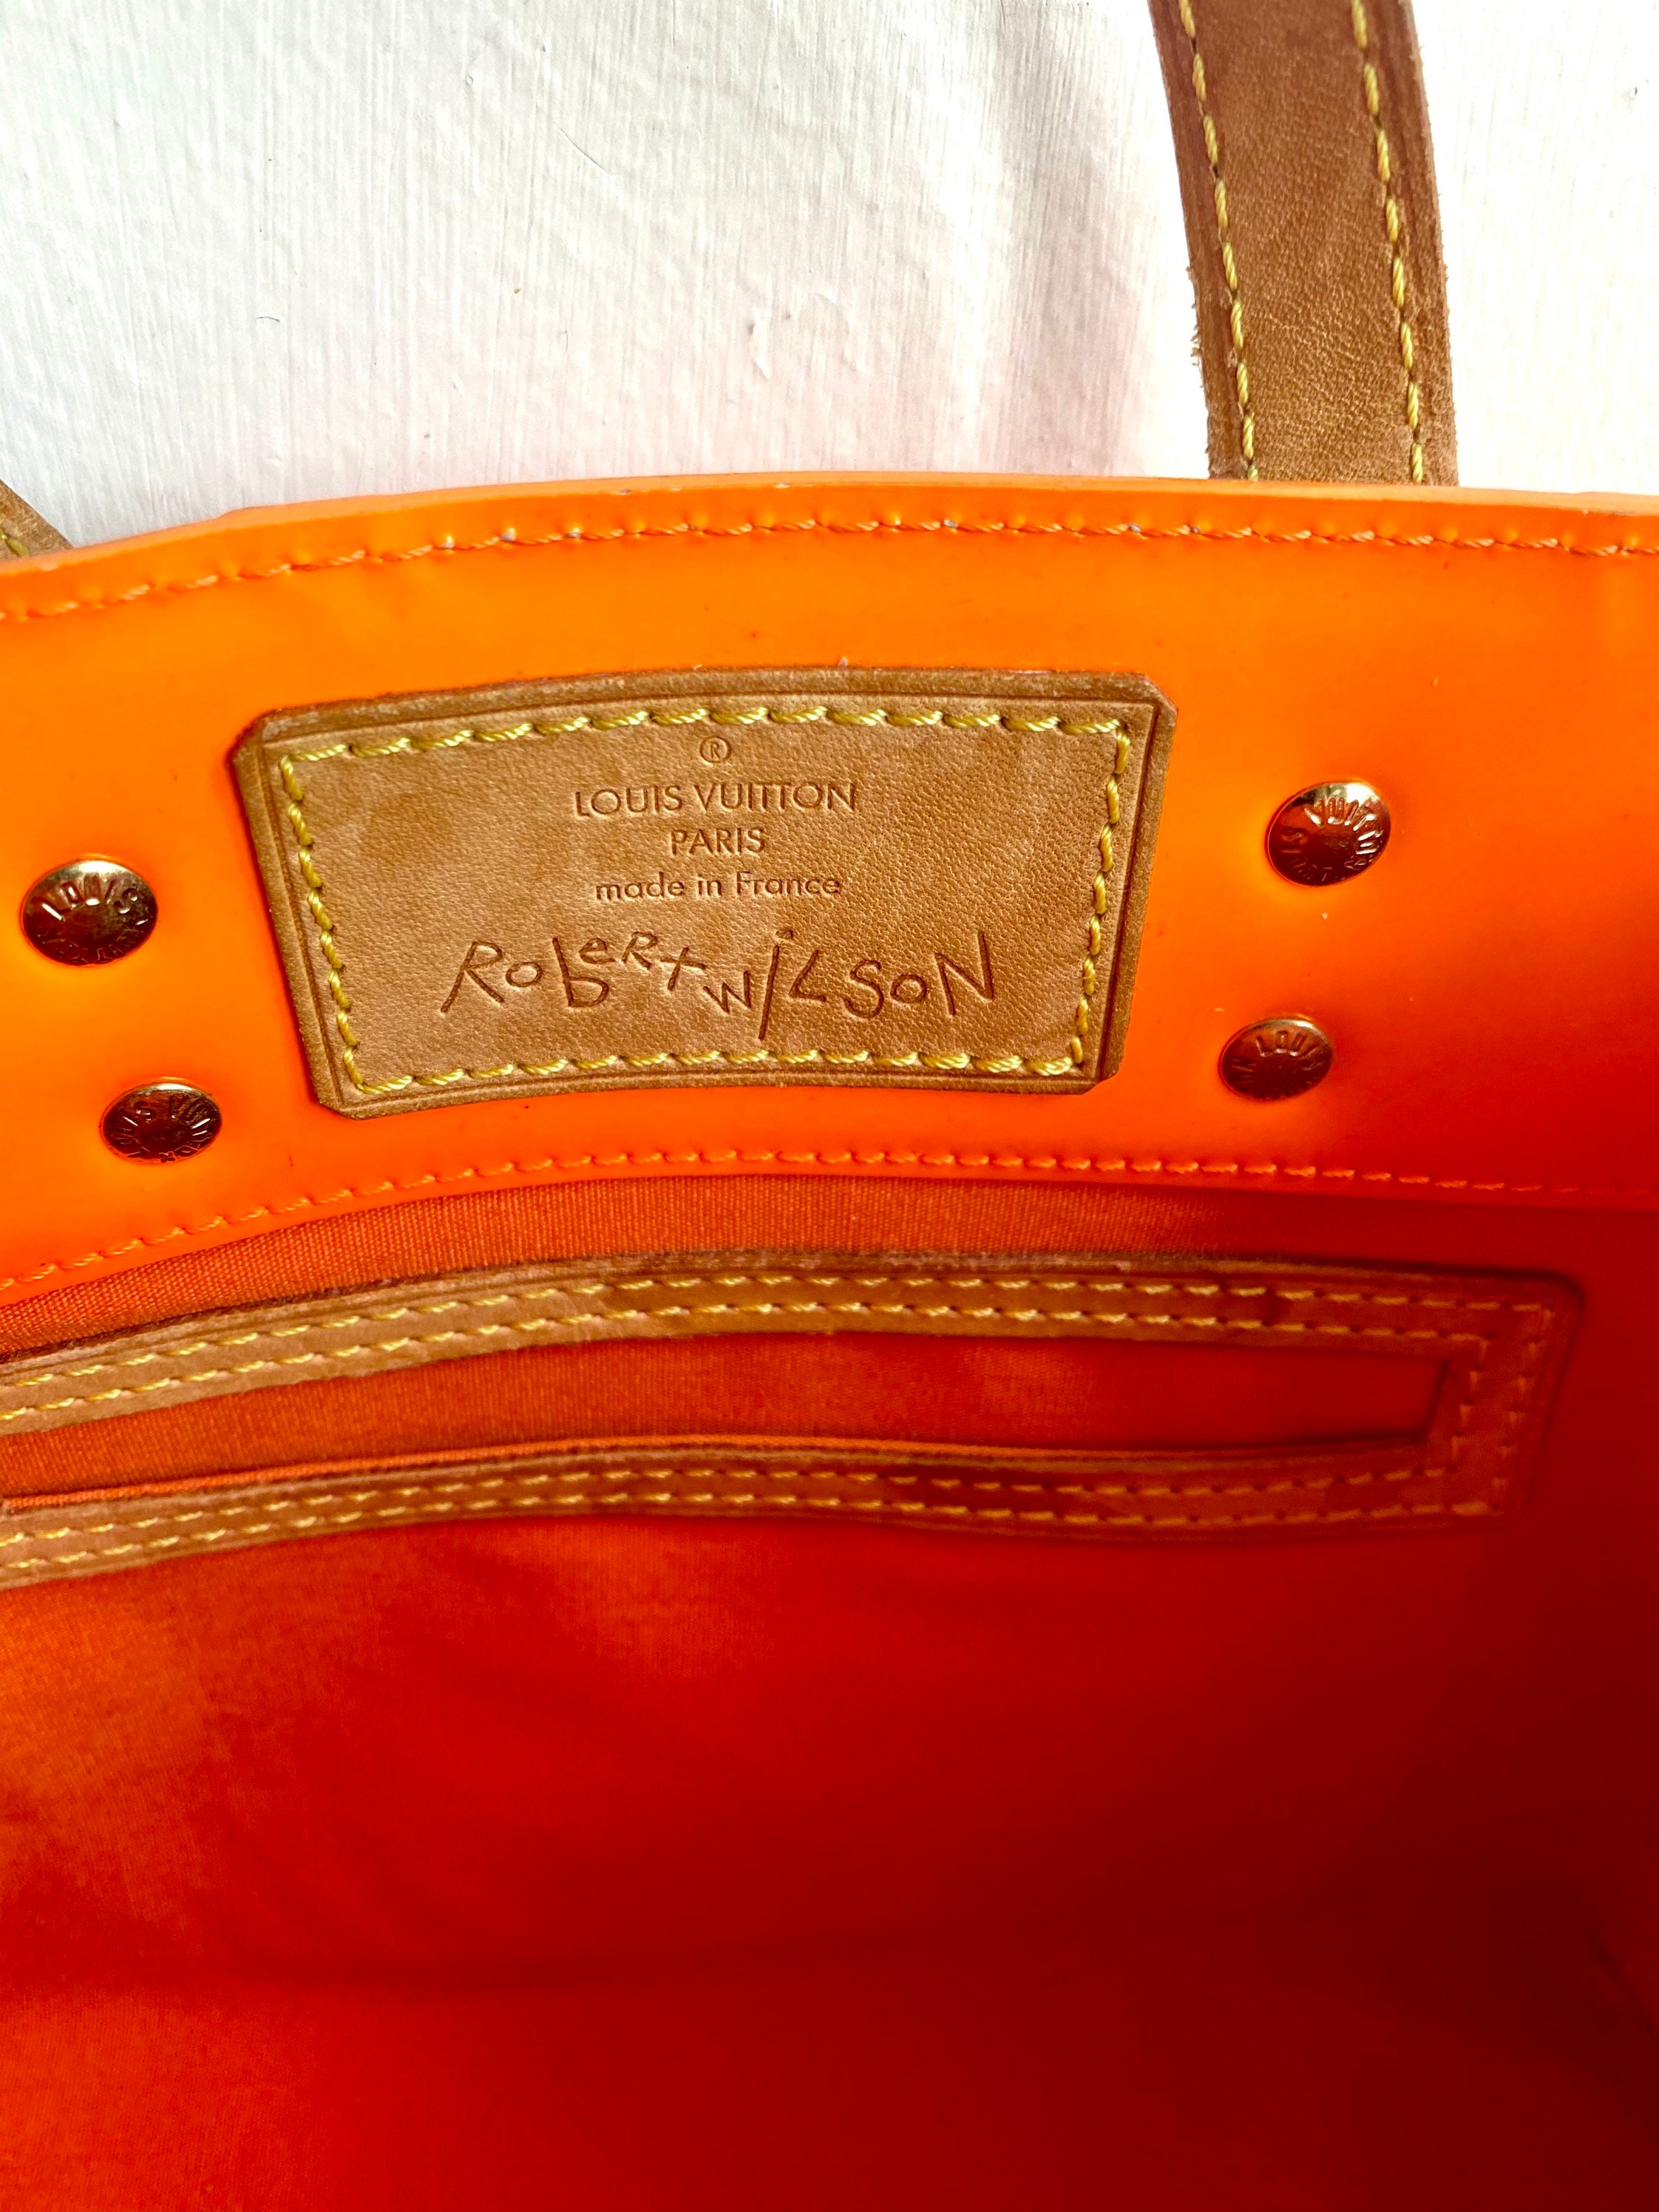 Vuitton reedita su icónico bolso creado para llevar con estilo